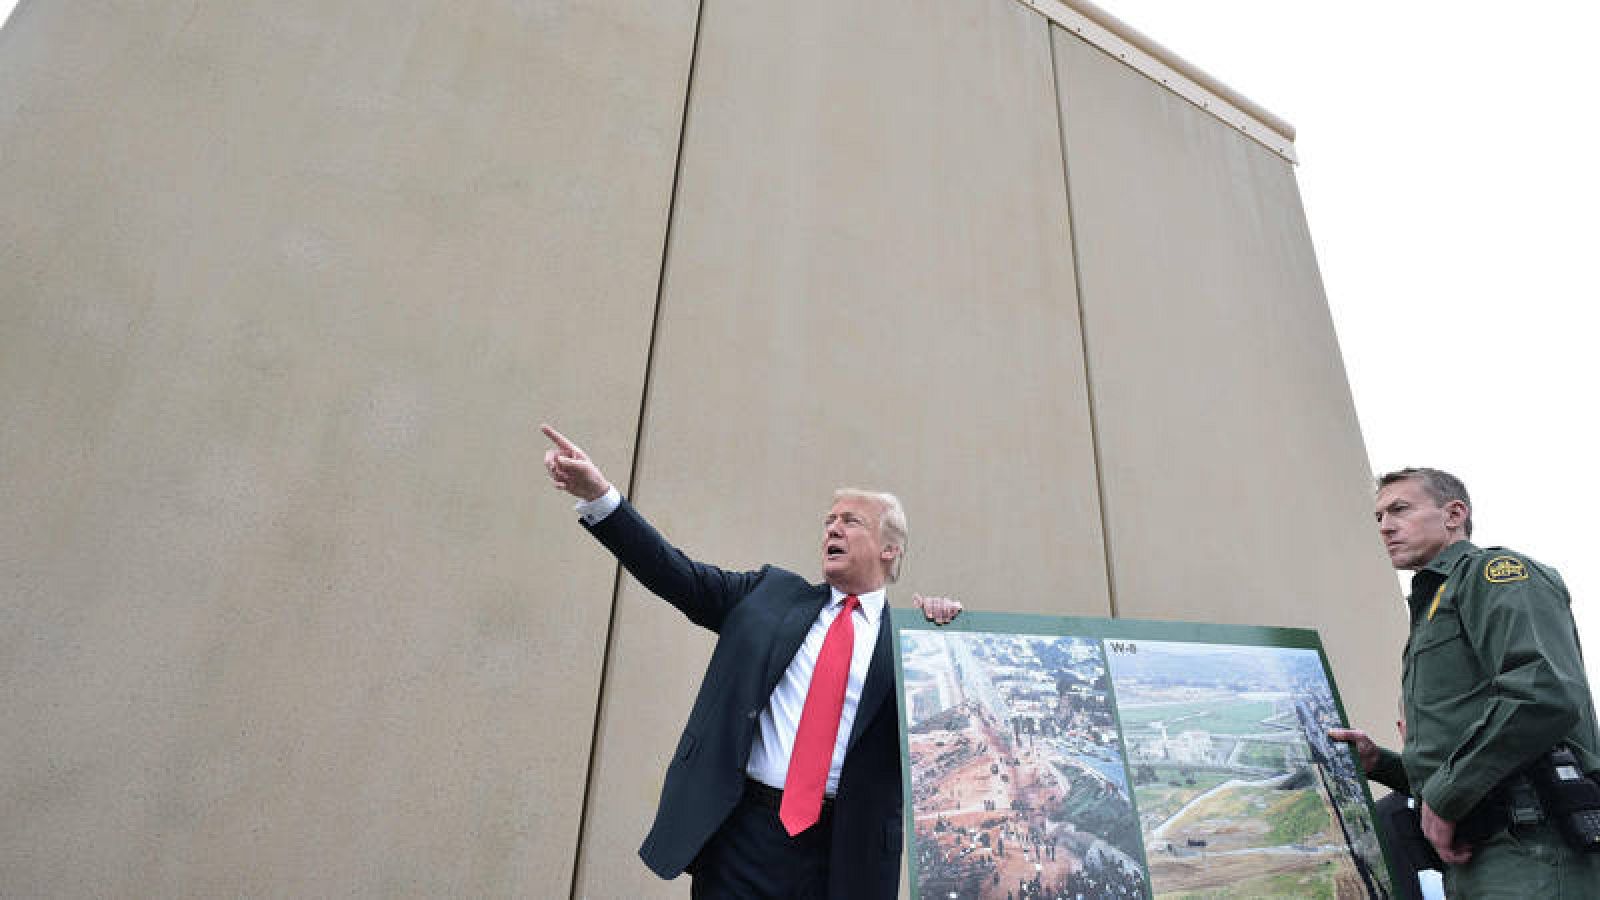 Resultado de imagen para Muro de Trump